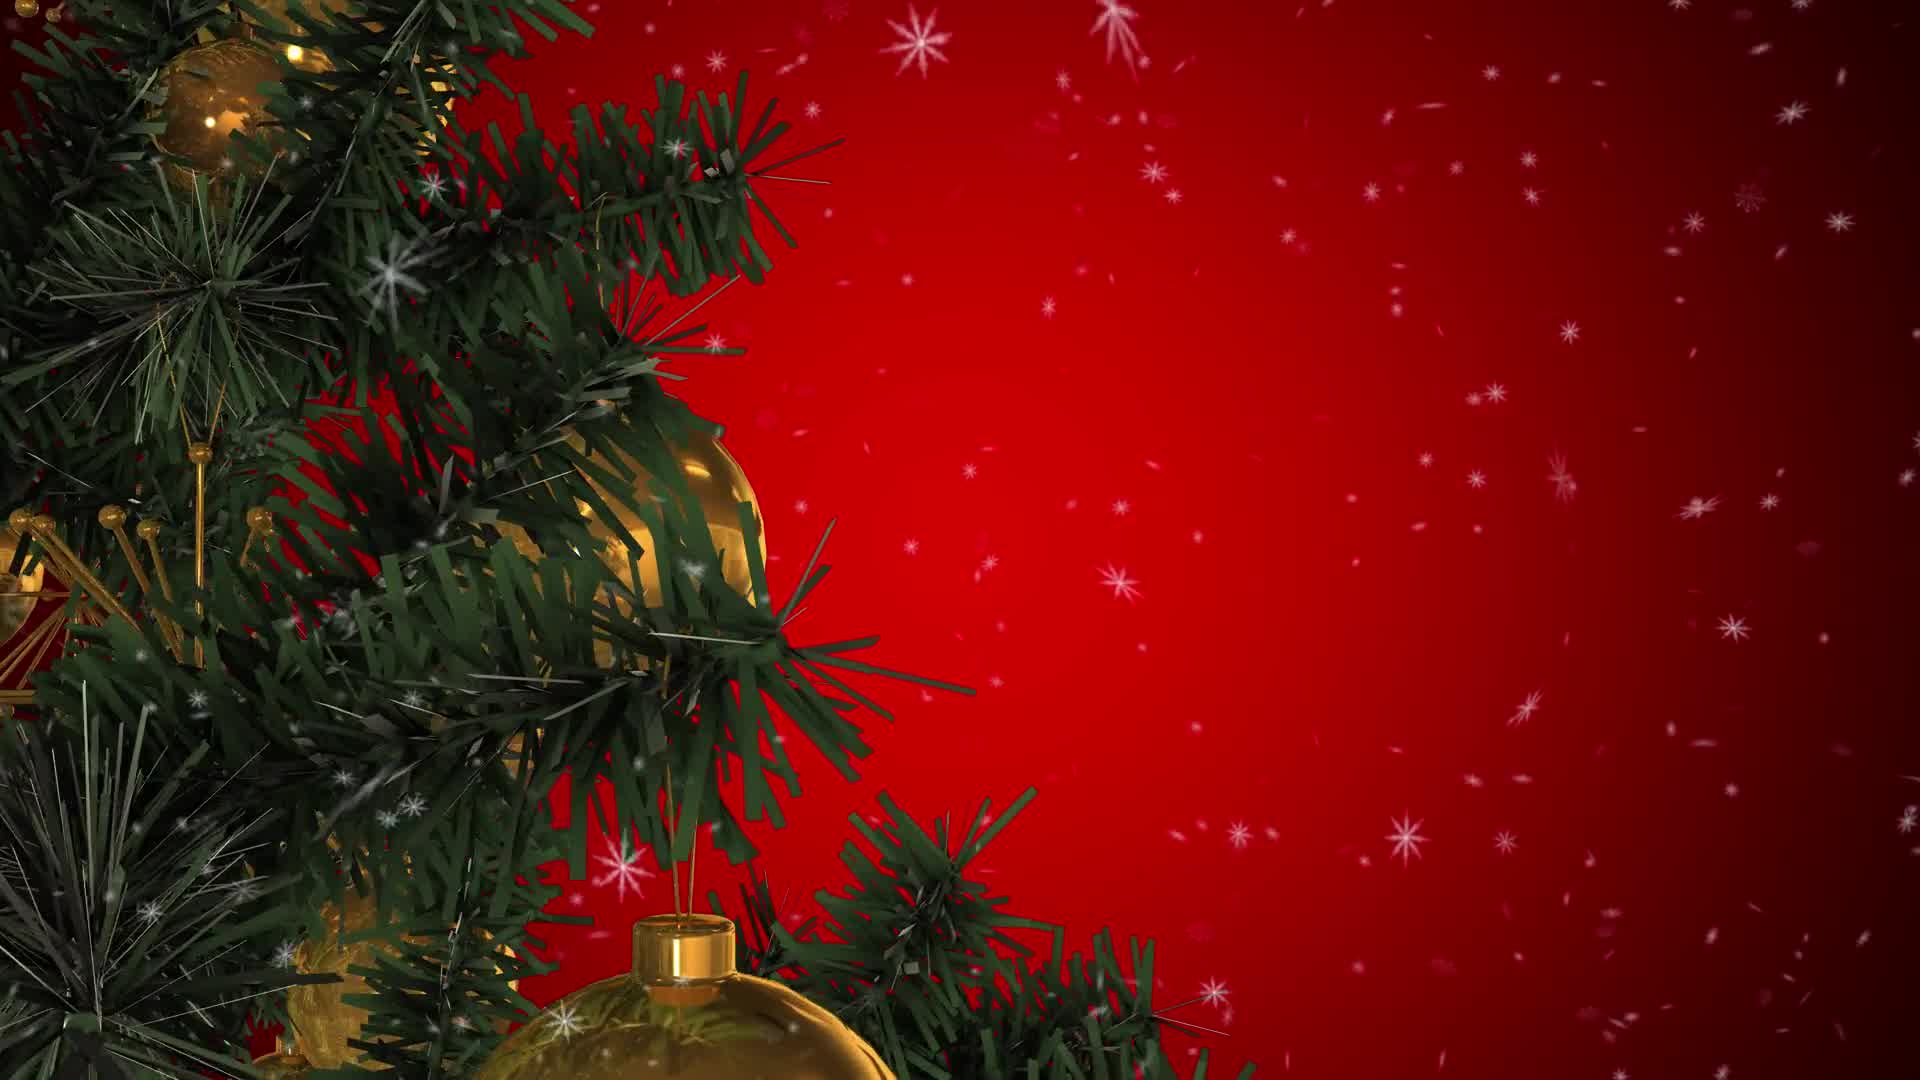 Rotating Christmas Tree Videohive 22935986 Motion Graphics Image 8